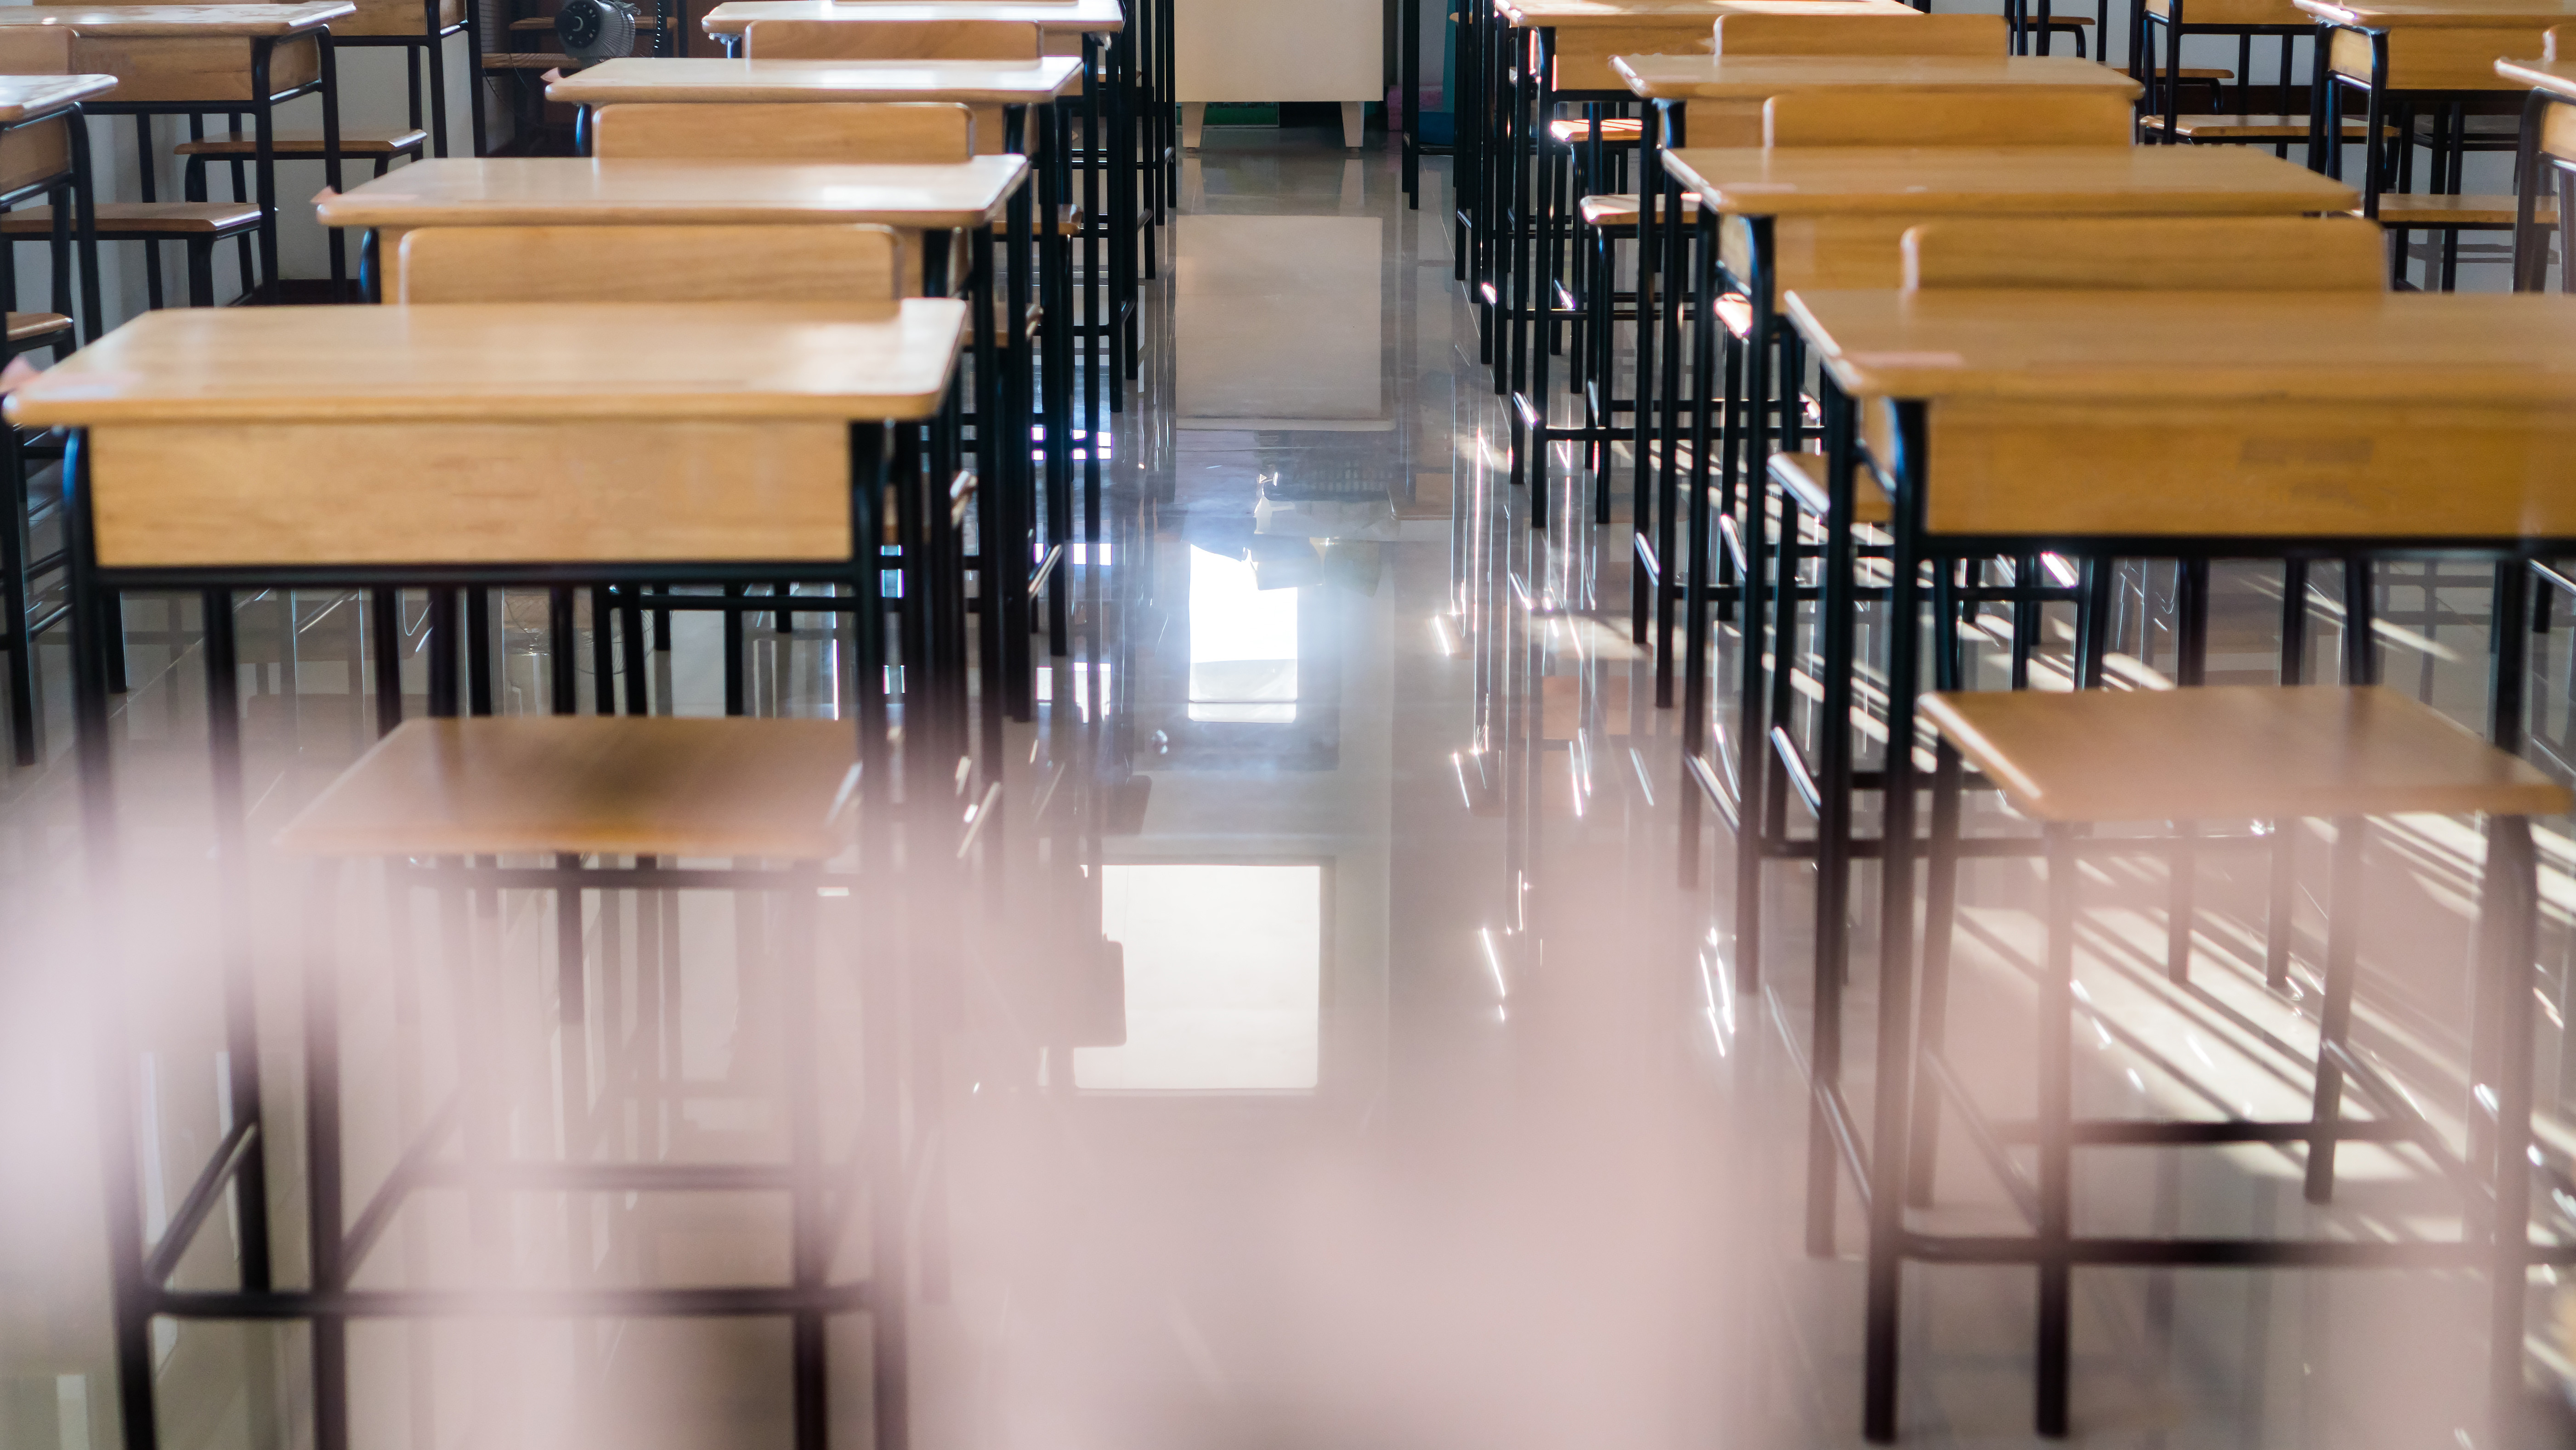 Pescara, atti sessuali su una studentessa quattordicenne, professoressa interdetta dall'insegnamento per un periodo di dodici mesi. 